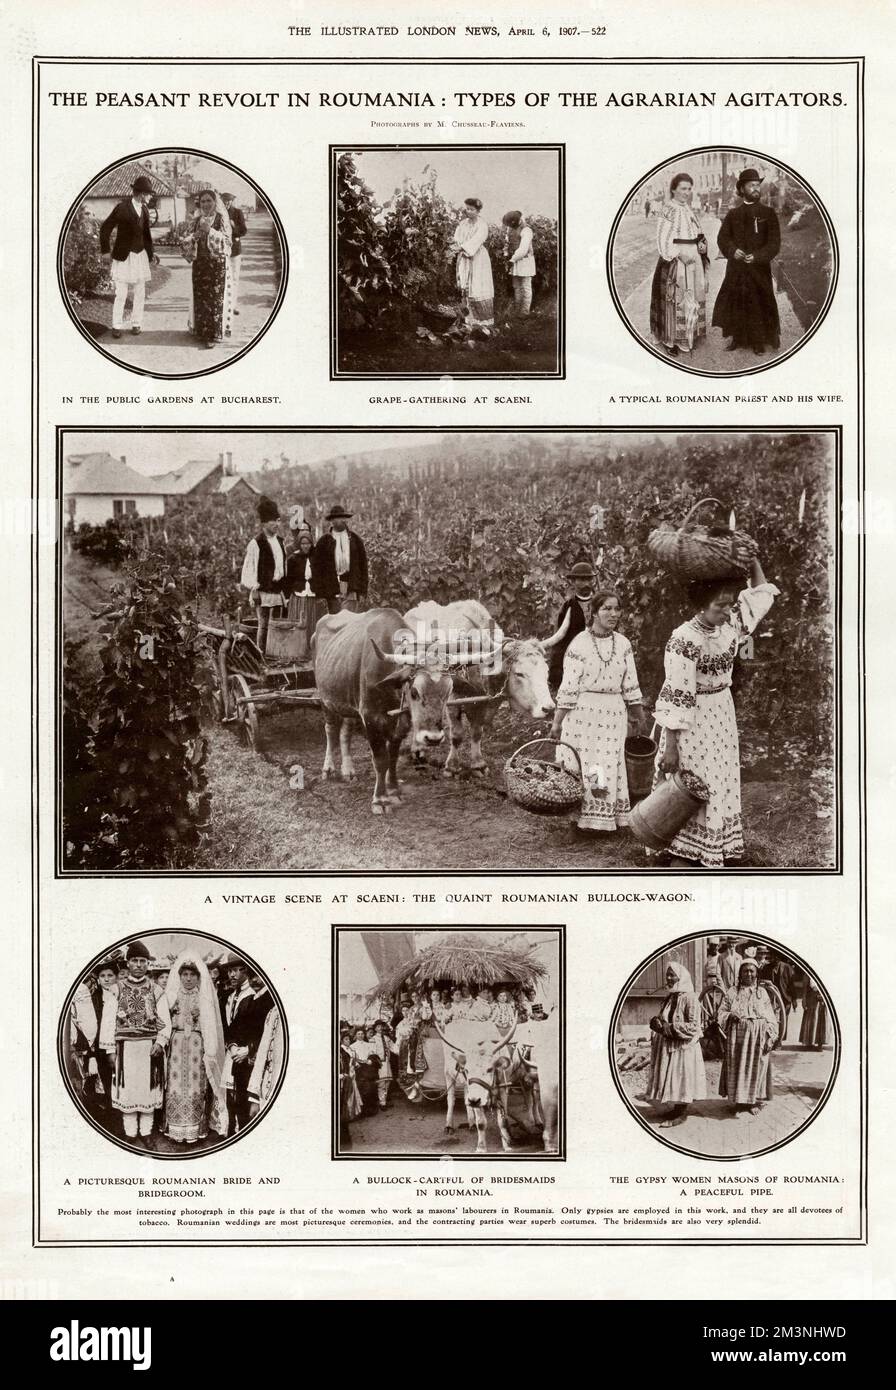 Eine Seite aus den illustrierten London News zeigt die Art rumänischer Menschen, die angeblich in die Bauernaufstände verwickelt waren, die im März 1907 begannen und nach der Einberufung der Armee zur Wiederherstellung der Ordnung zum Tod vieler Tausender Menschen führten. Im Preis inbegriffen sind ein Paar in den Gärten von Bukarest, eine Szene der Traubensammlung in Scaeni, ein rumänischer Priester und seine Frau, ein Bullock-Wagon, eine Braut und ein Bräutigam, Brautjungfern und Zigeunerinnen, die Freimaurer rauchen. Datum: 1907 Stockfoto